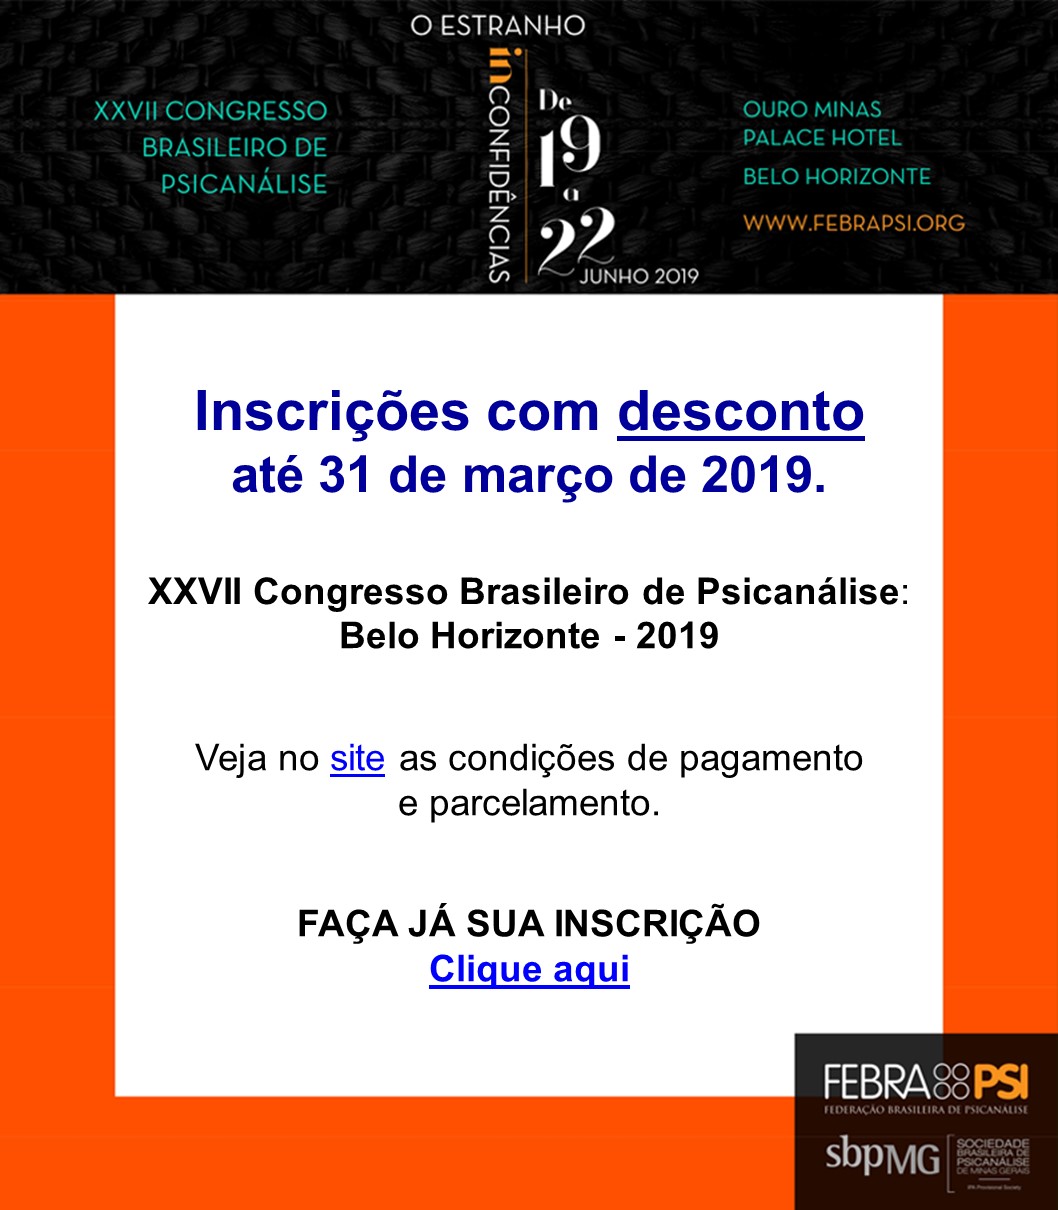 Aproveite o desconto progressivo e faça sua inscrição até 31 de março no XXVII Congresso Brasileiro de Psicanálise